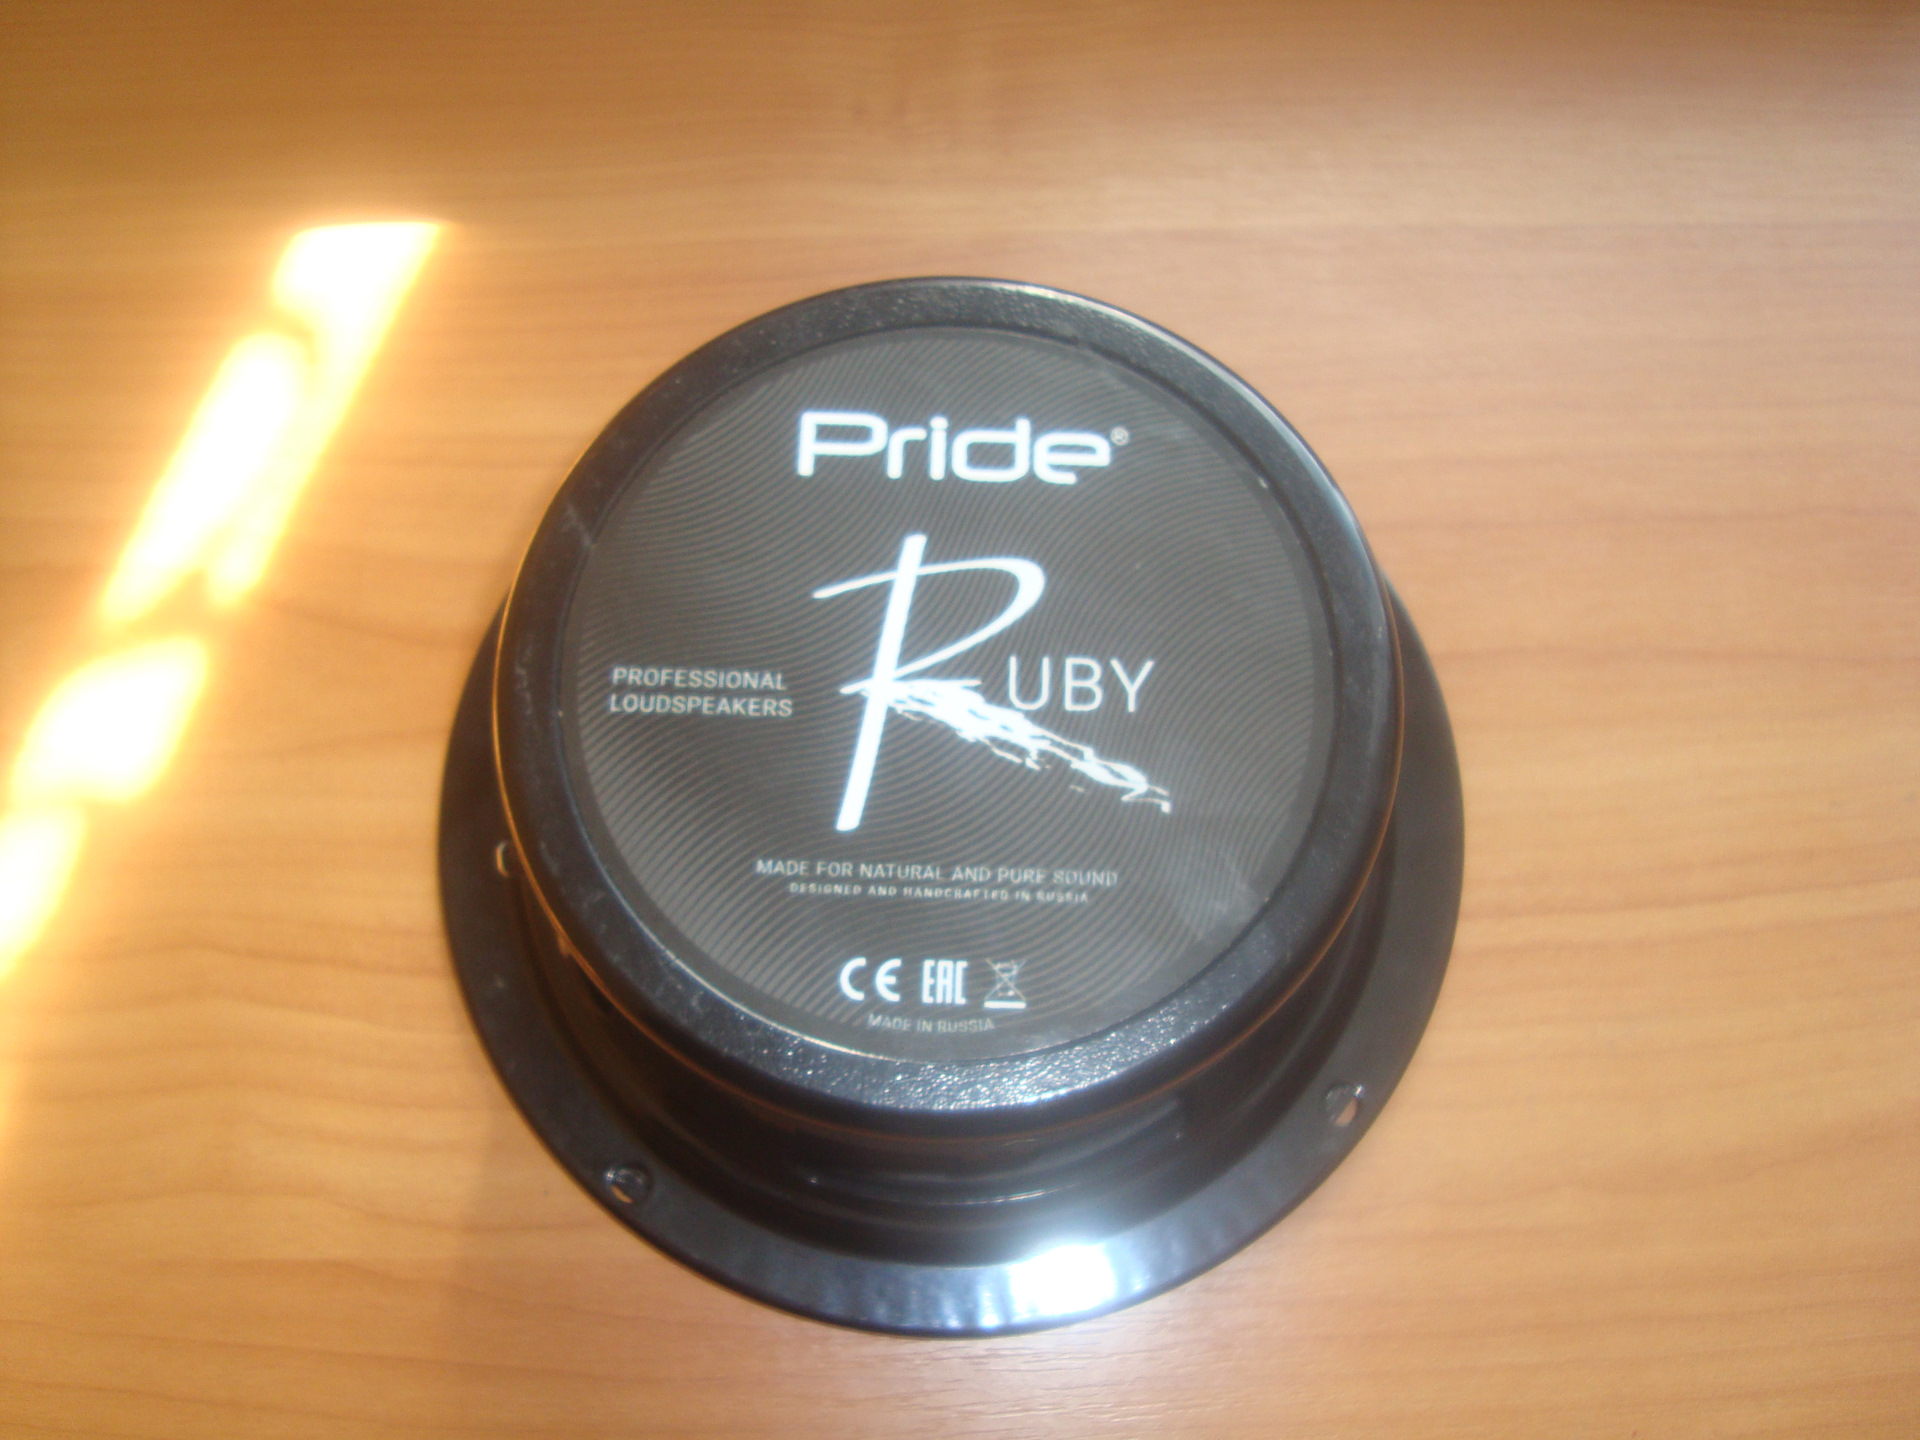 Прайд руби характеристики. Pride Ruby 16.5. Прайд Руби воч 6.5. Pride Ruby 6.5. Прайд Руби 16.